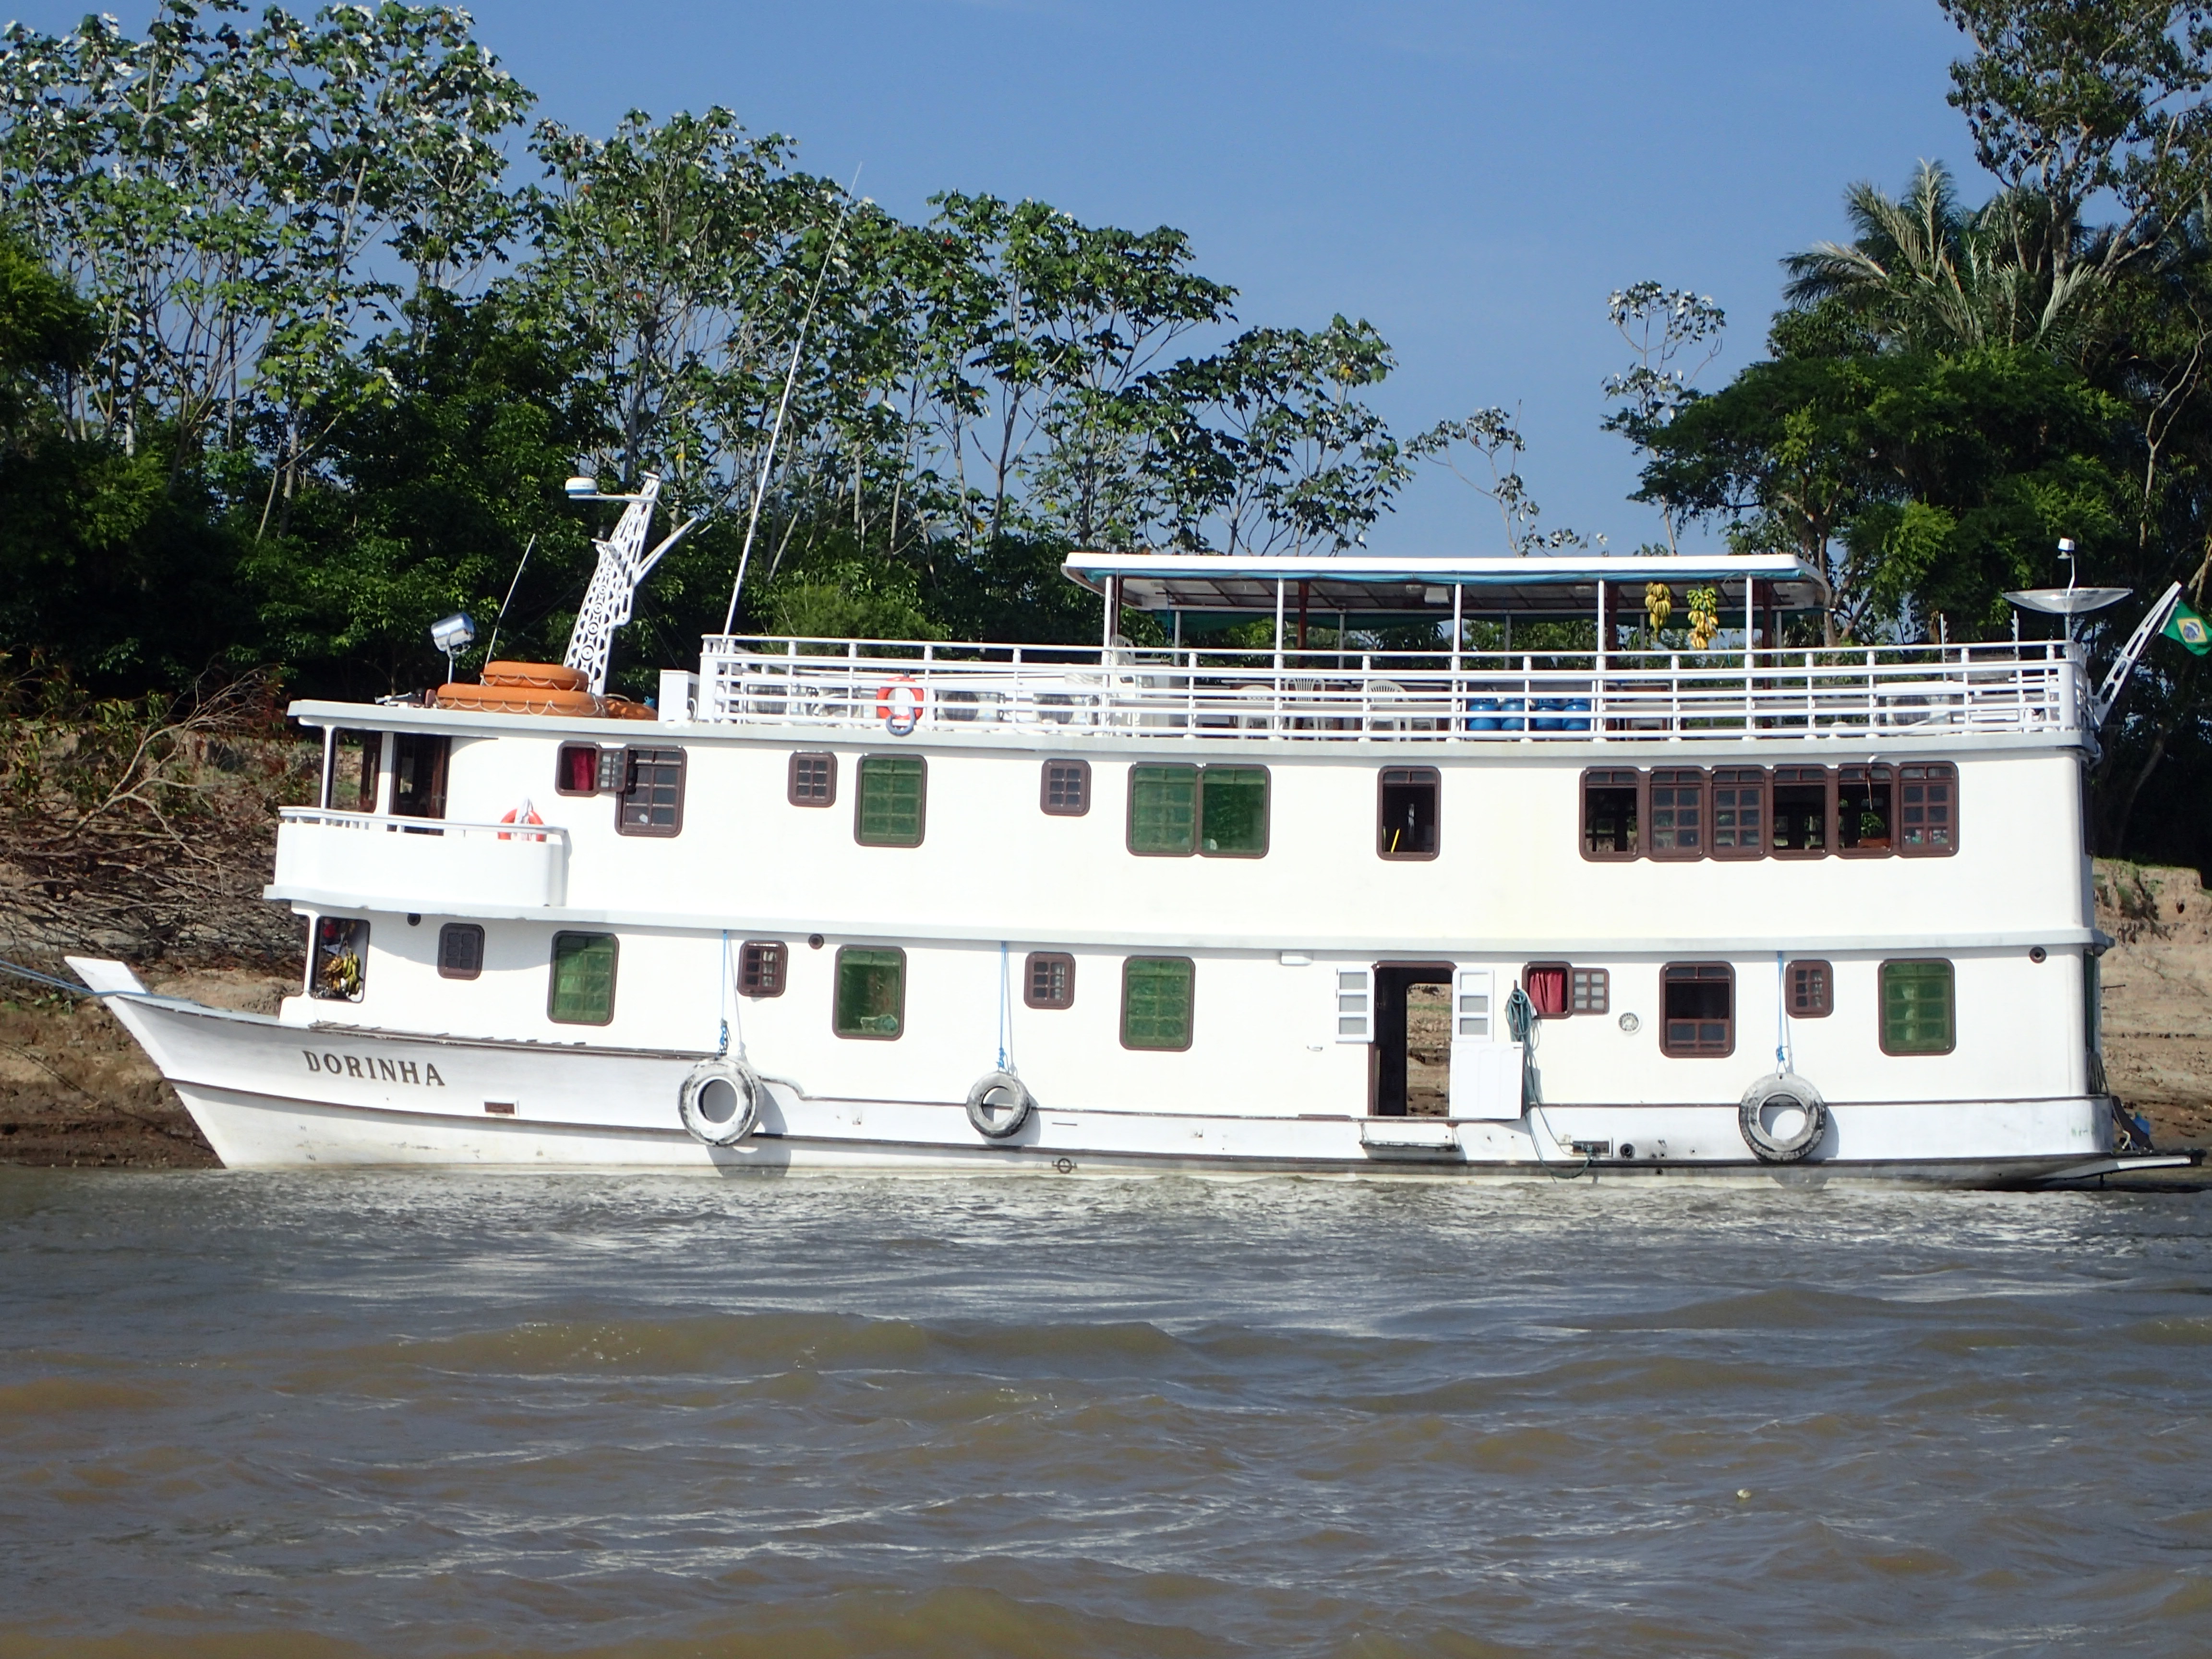 Reportage über eine Flusskreuzfahrt auf dem Amzonas und dem Rio Negro mit der MS Dorinha, Vollcharter des Spezialveranstalters Polaris Tours